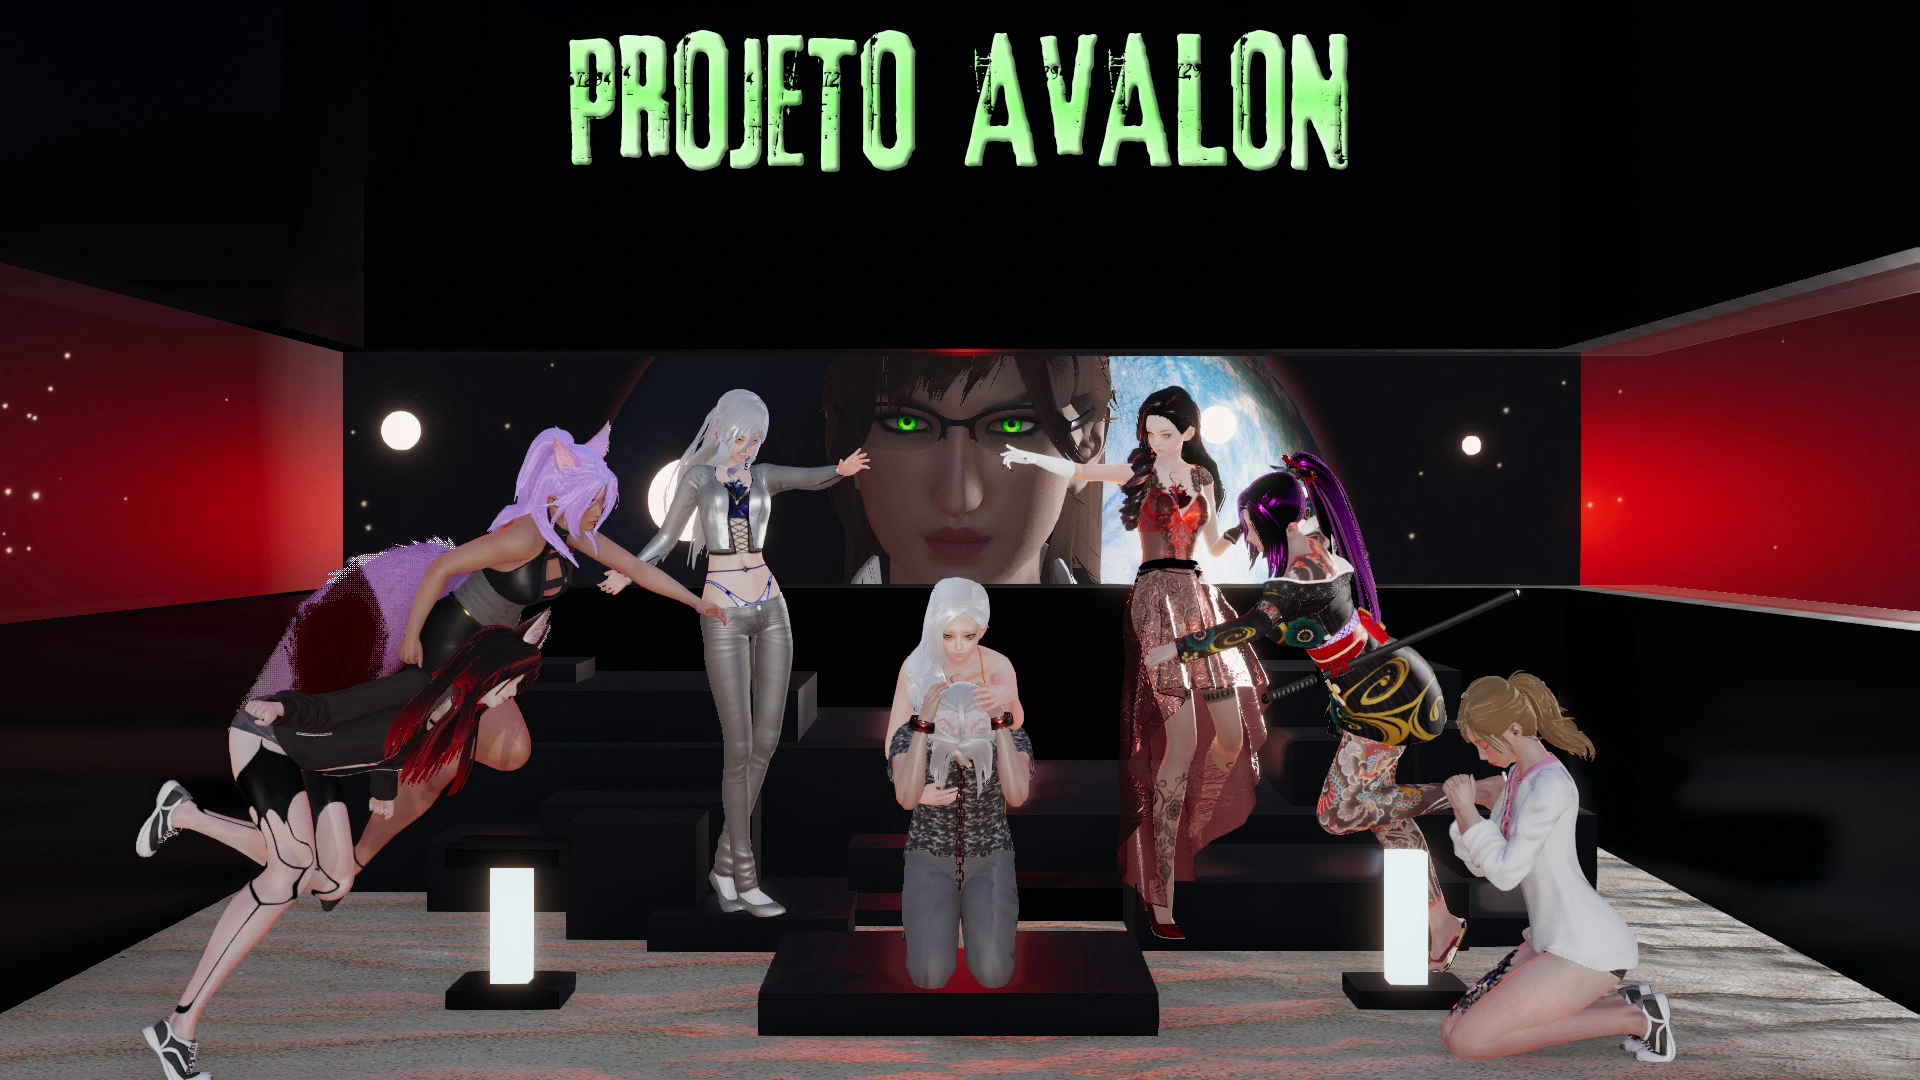 Avalon Project [v2.0] main image